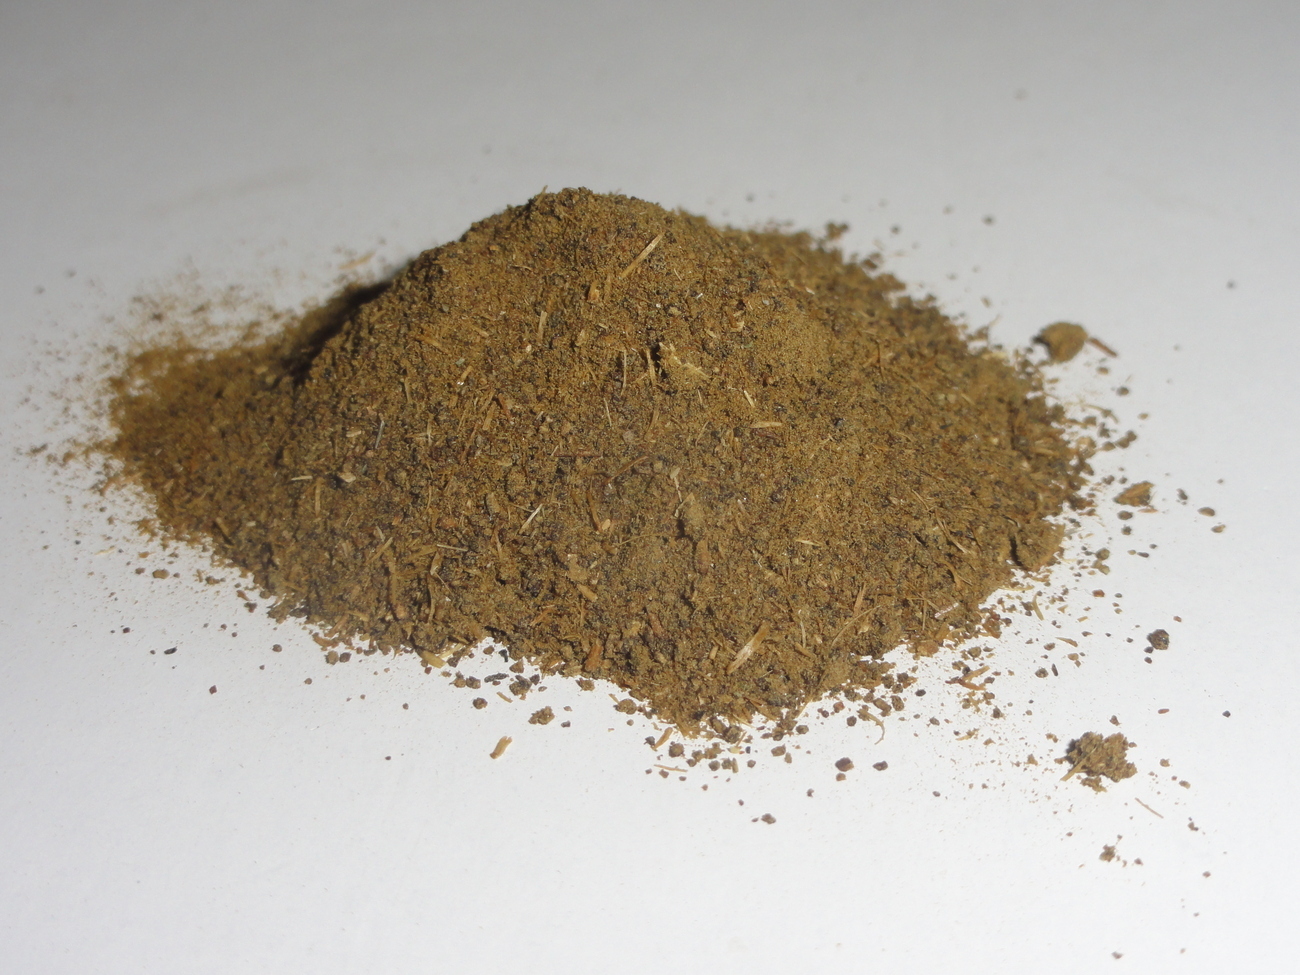 Calea Zacatechichi (Dream Herb) 10:1 Powder Extract